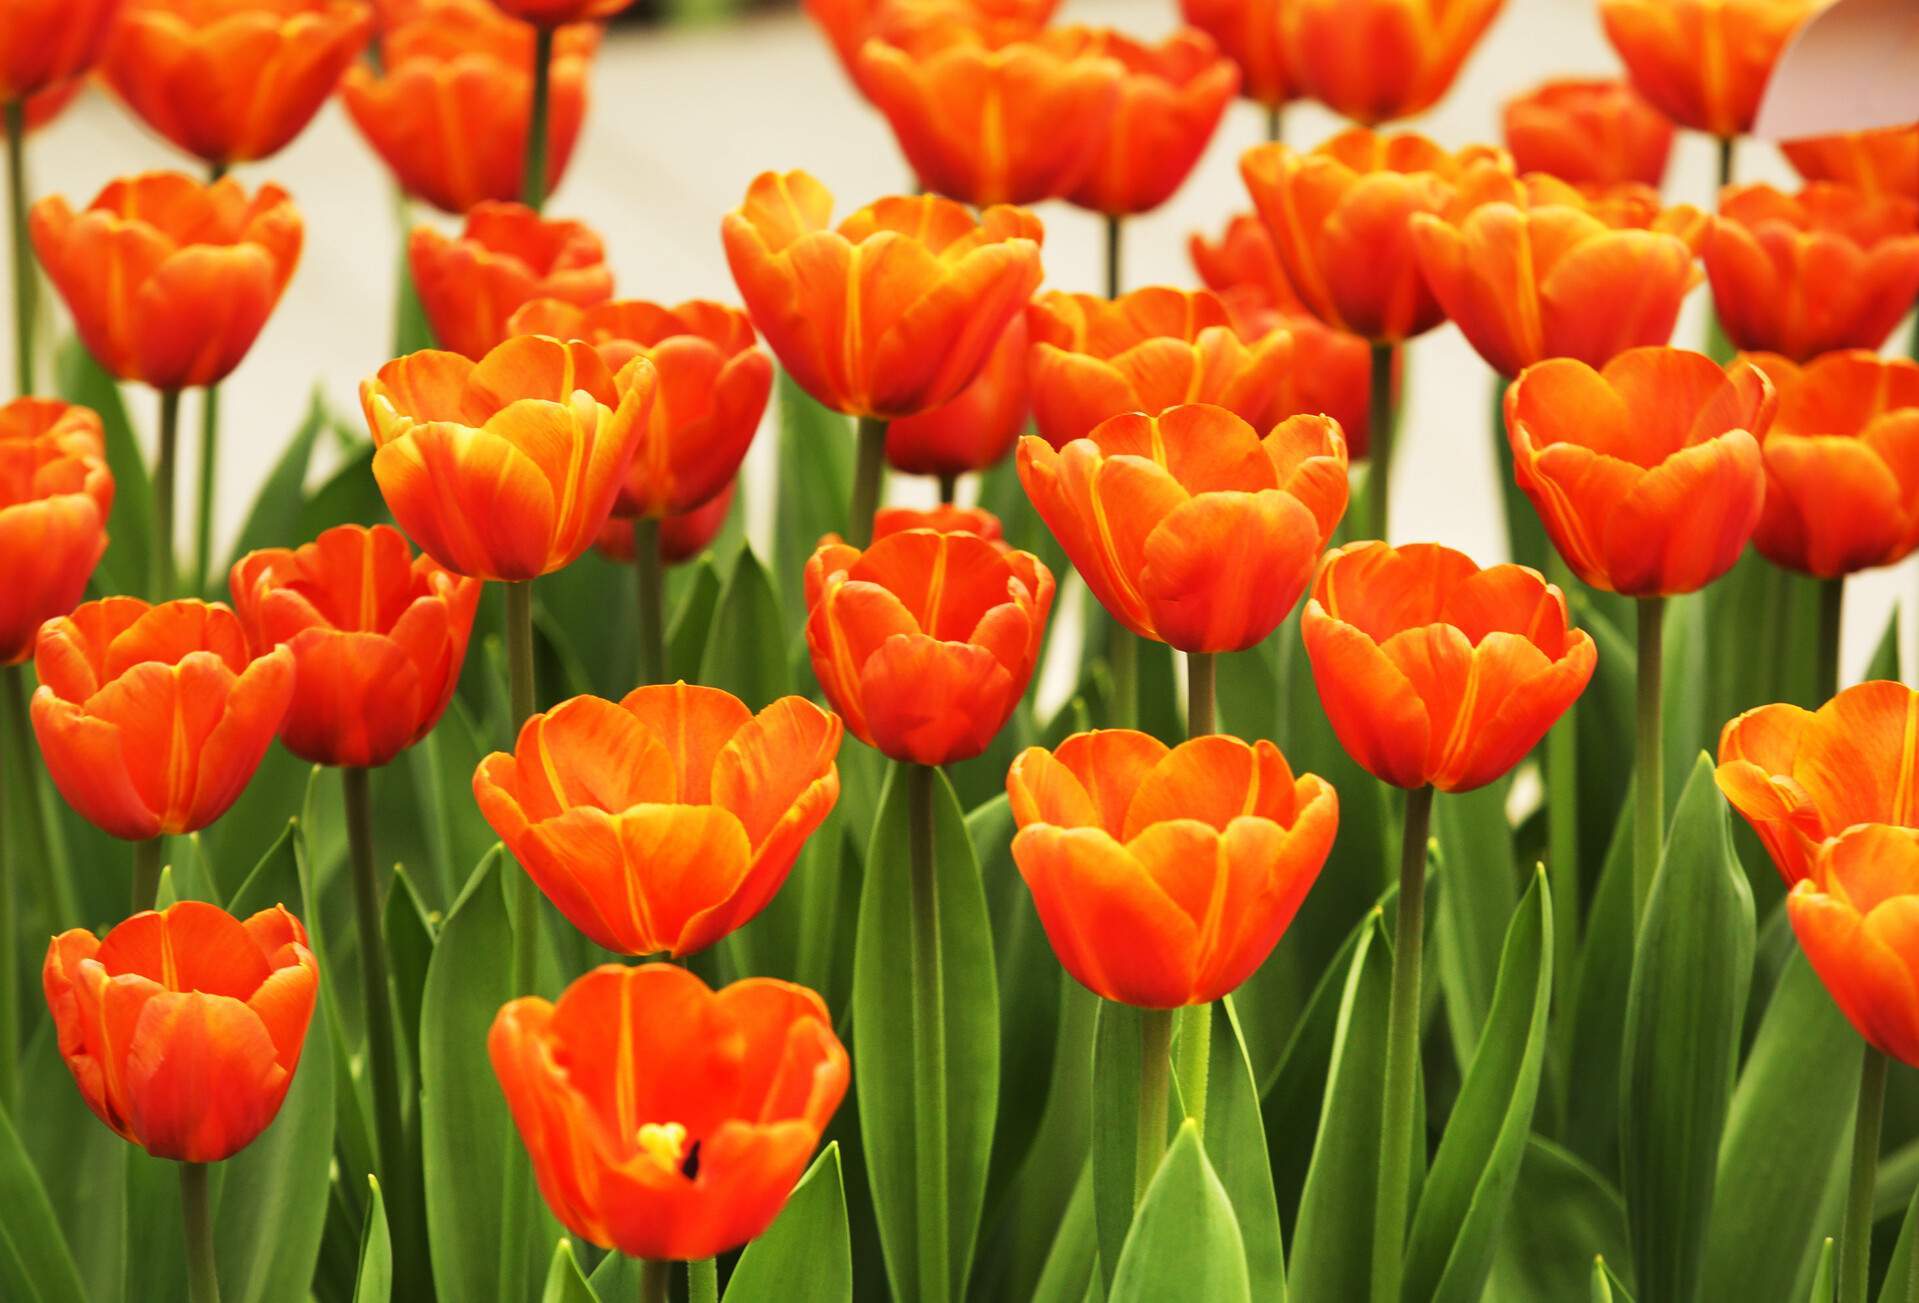 A portrait of beautiful orange tulip flowers.